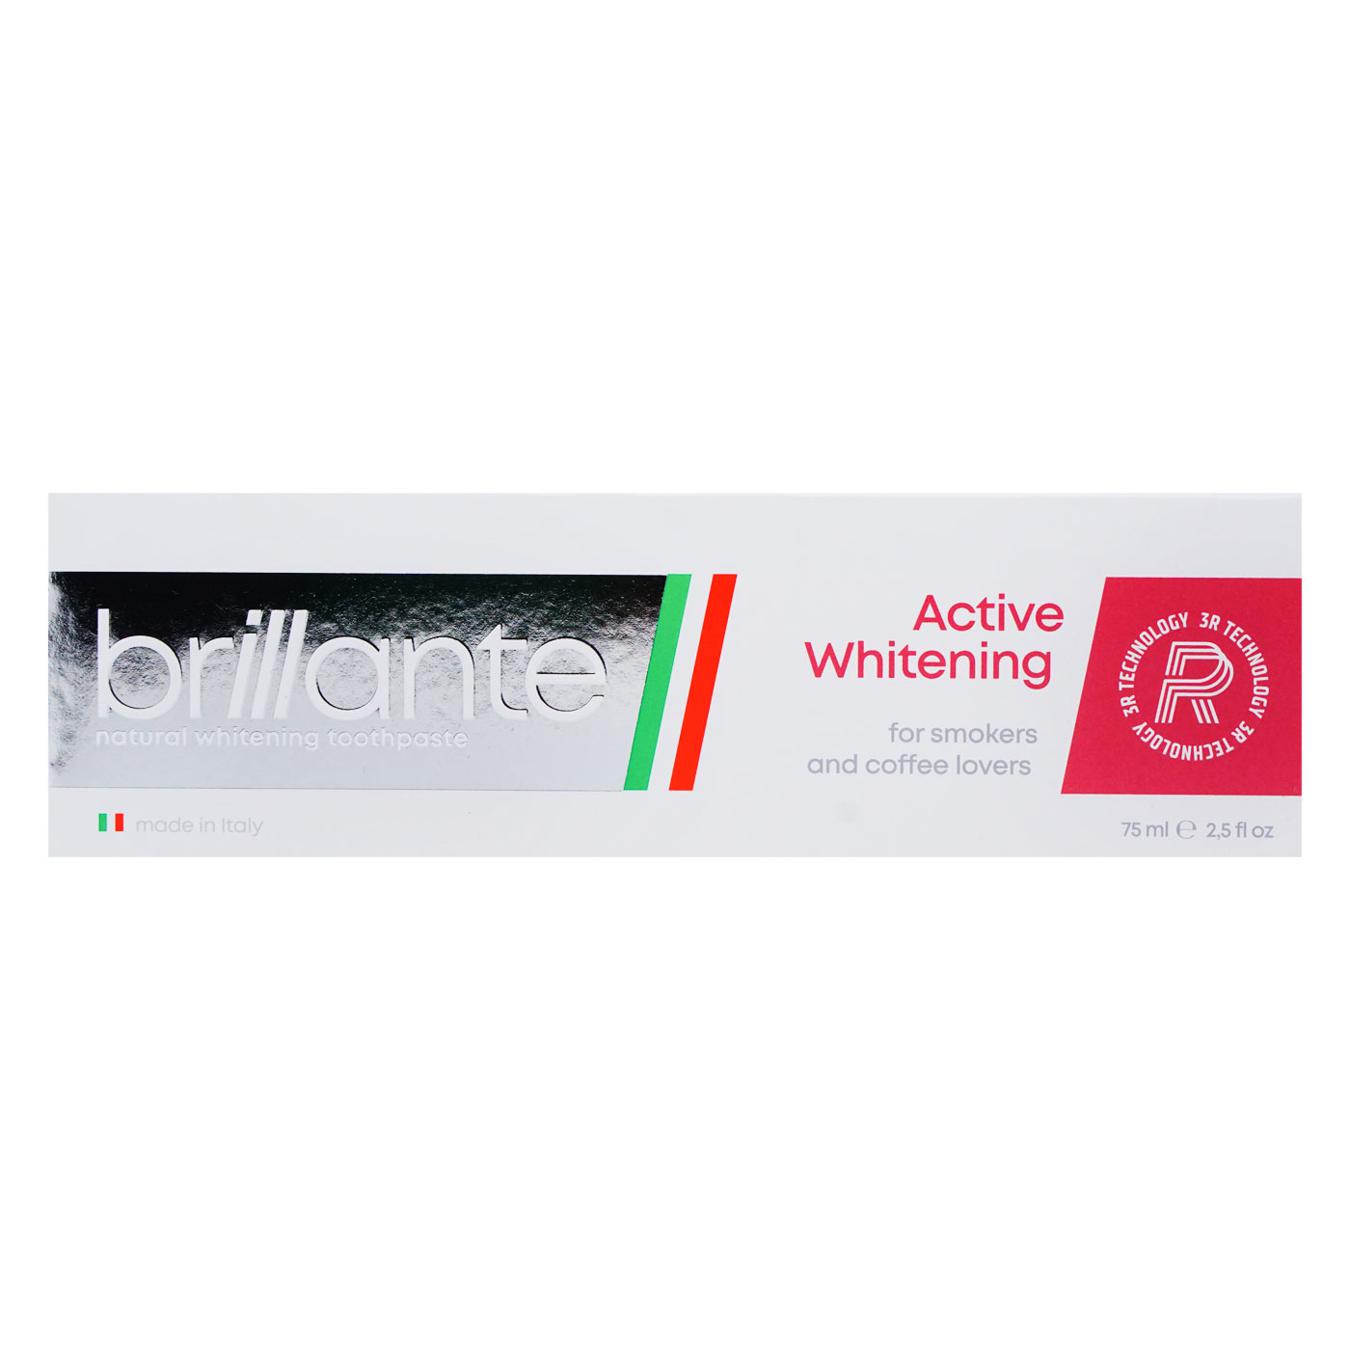 Зубна паста Brillante Active Whitening для курців та цінителів кави 75мл